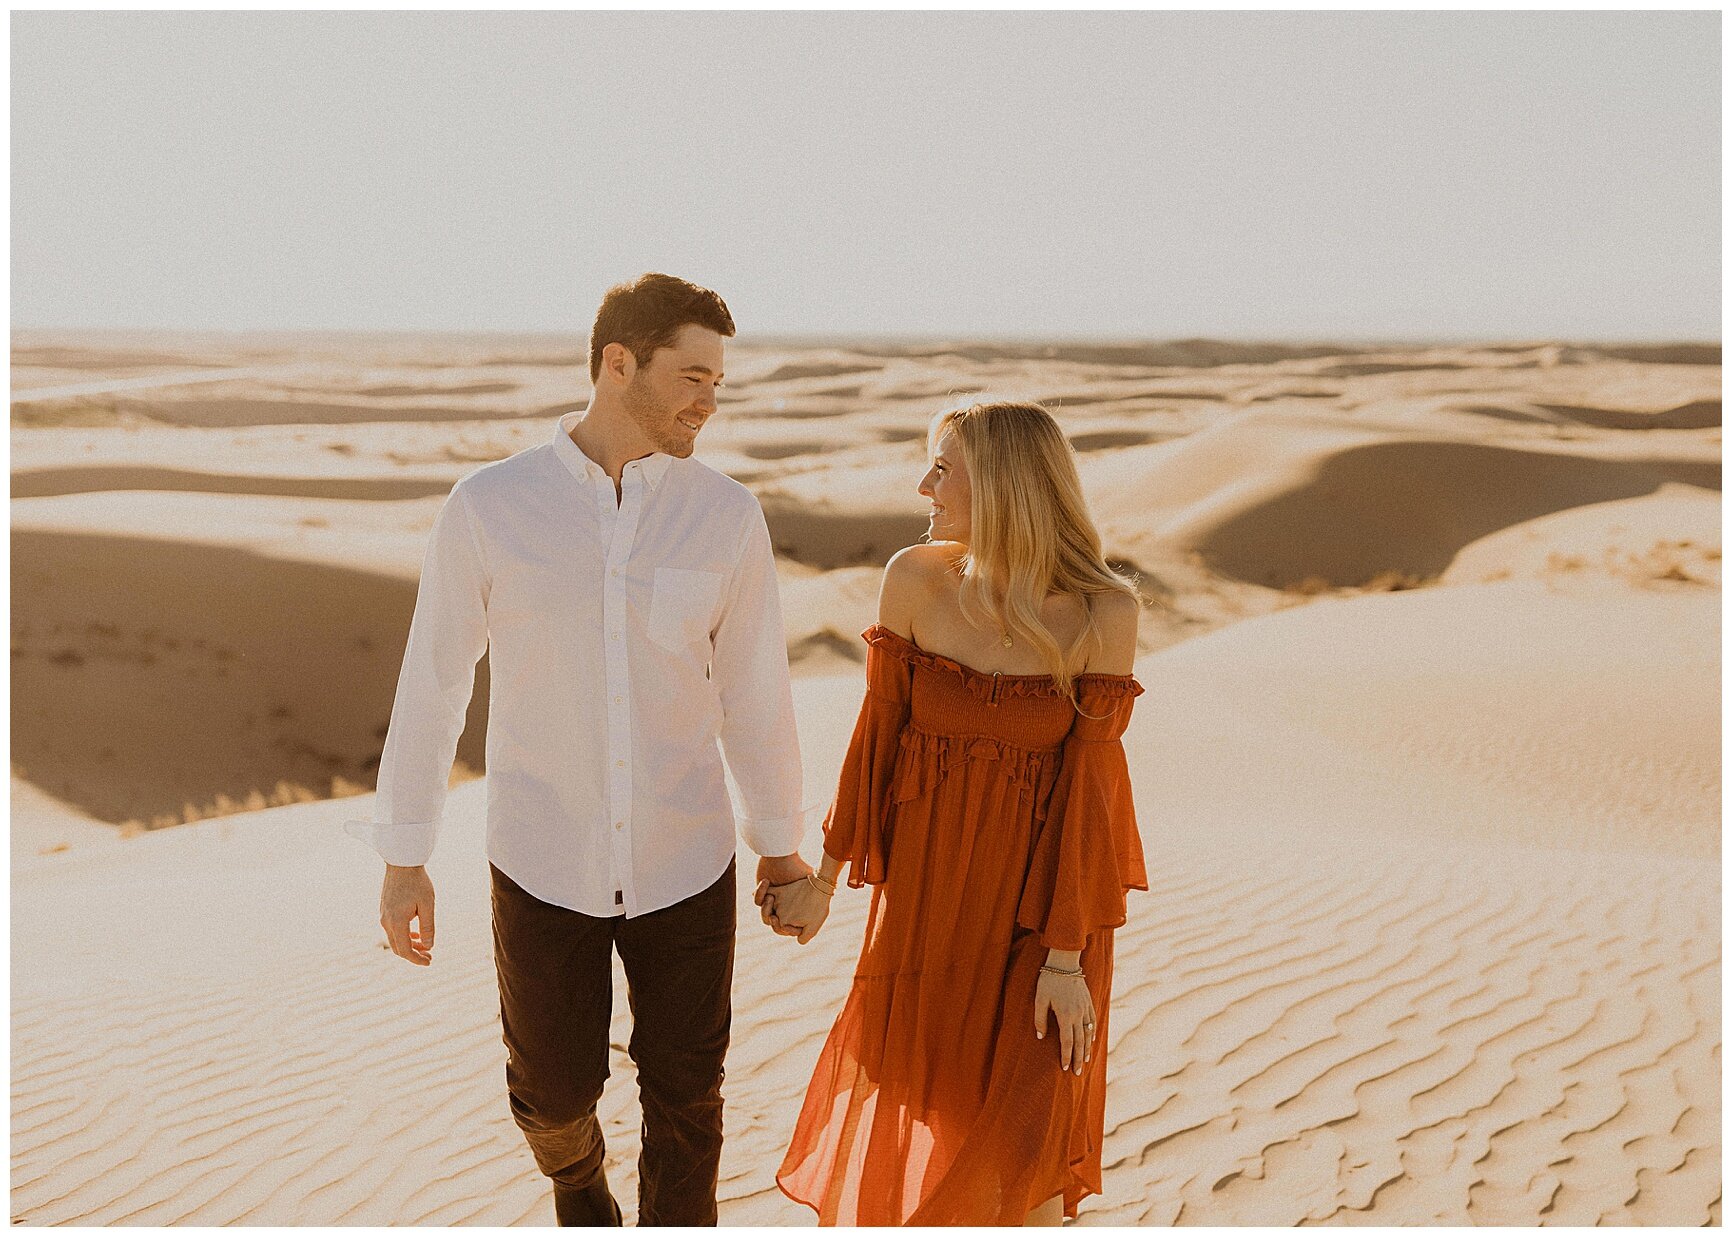  engaged couple walking along sand dunes 